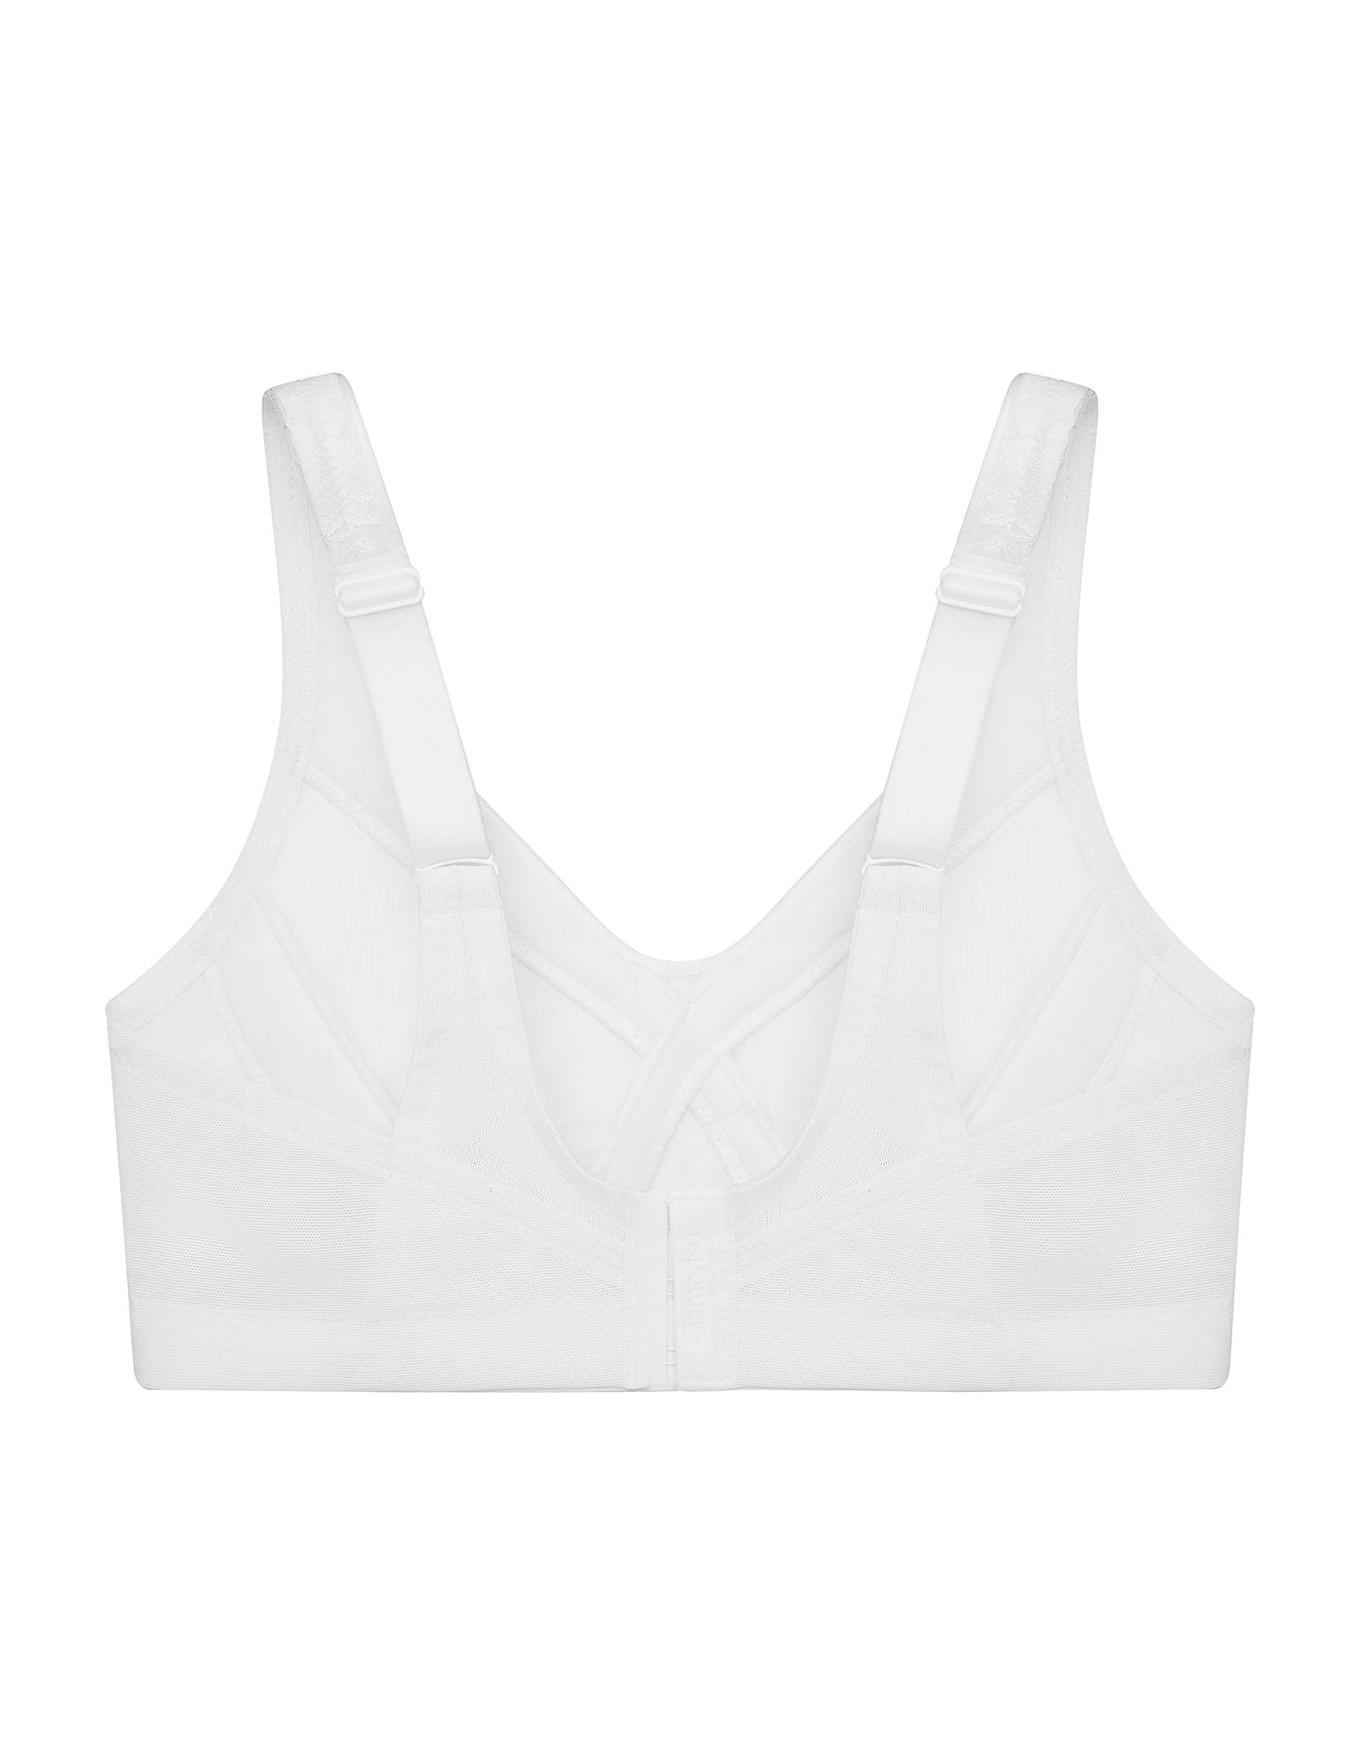 Glamorise MagicLift Size 38C White Seamless Support T-Shirt Bra